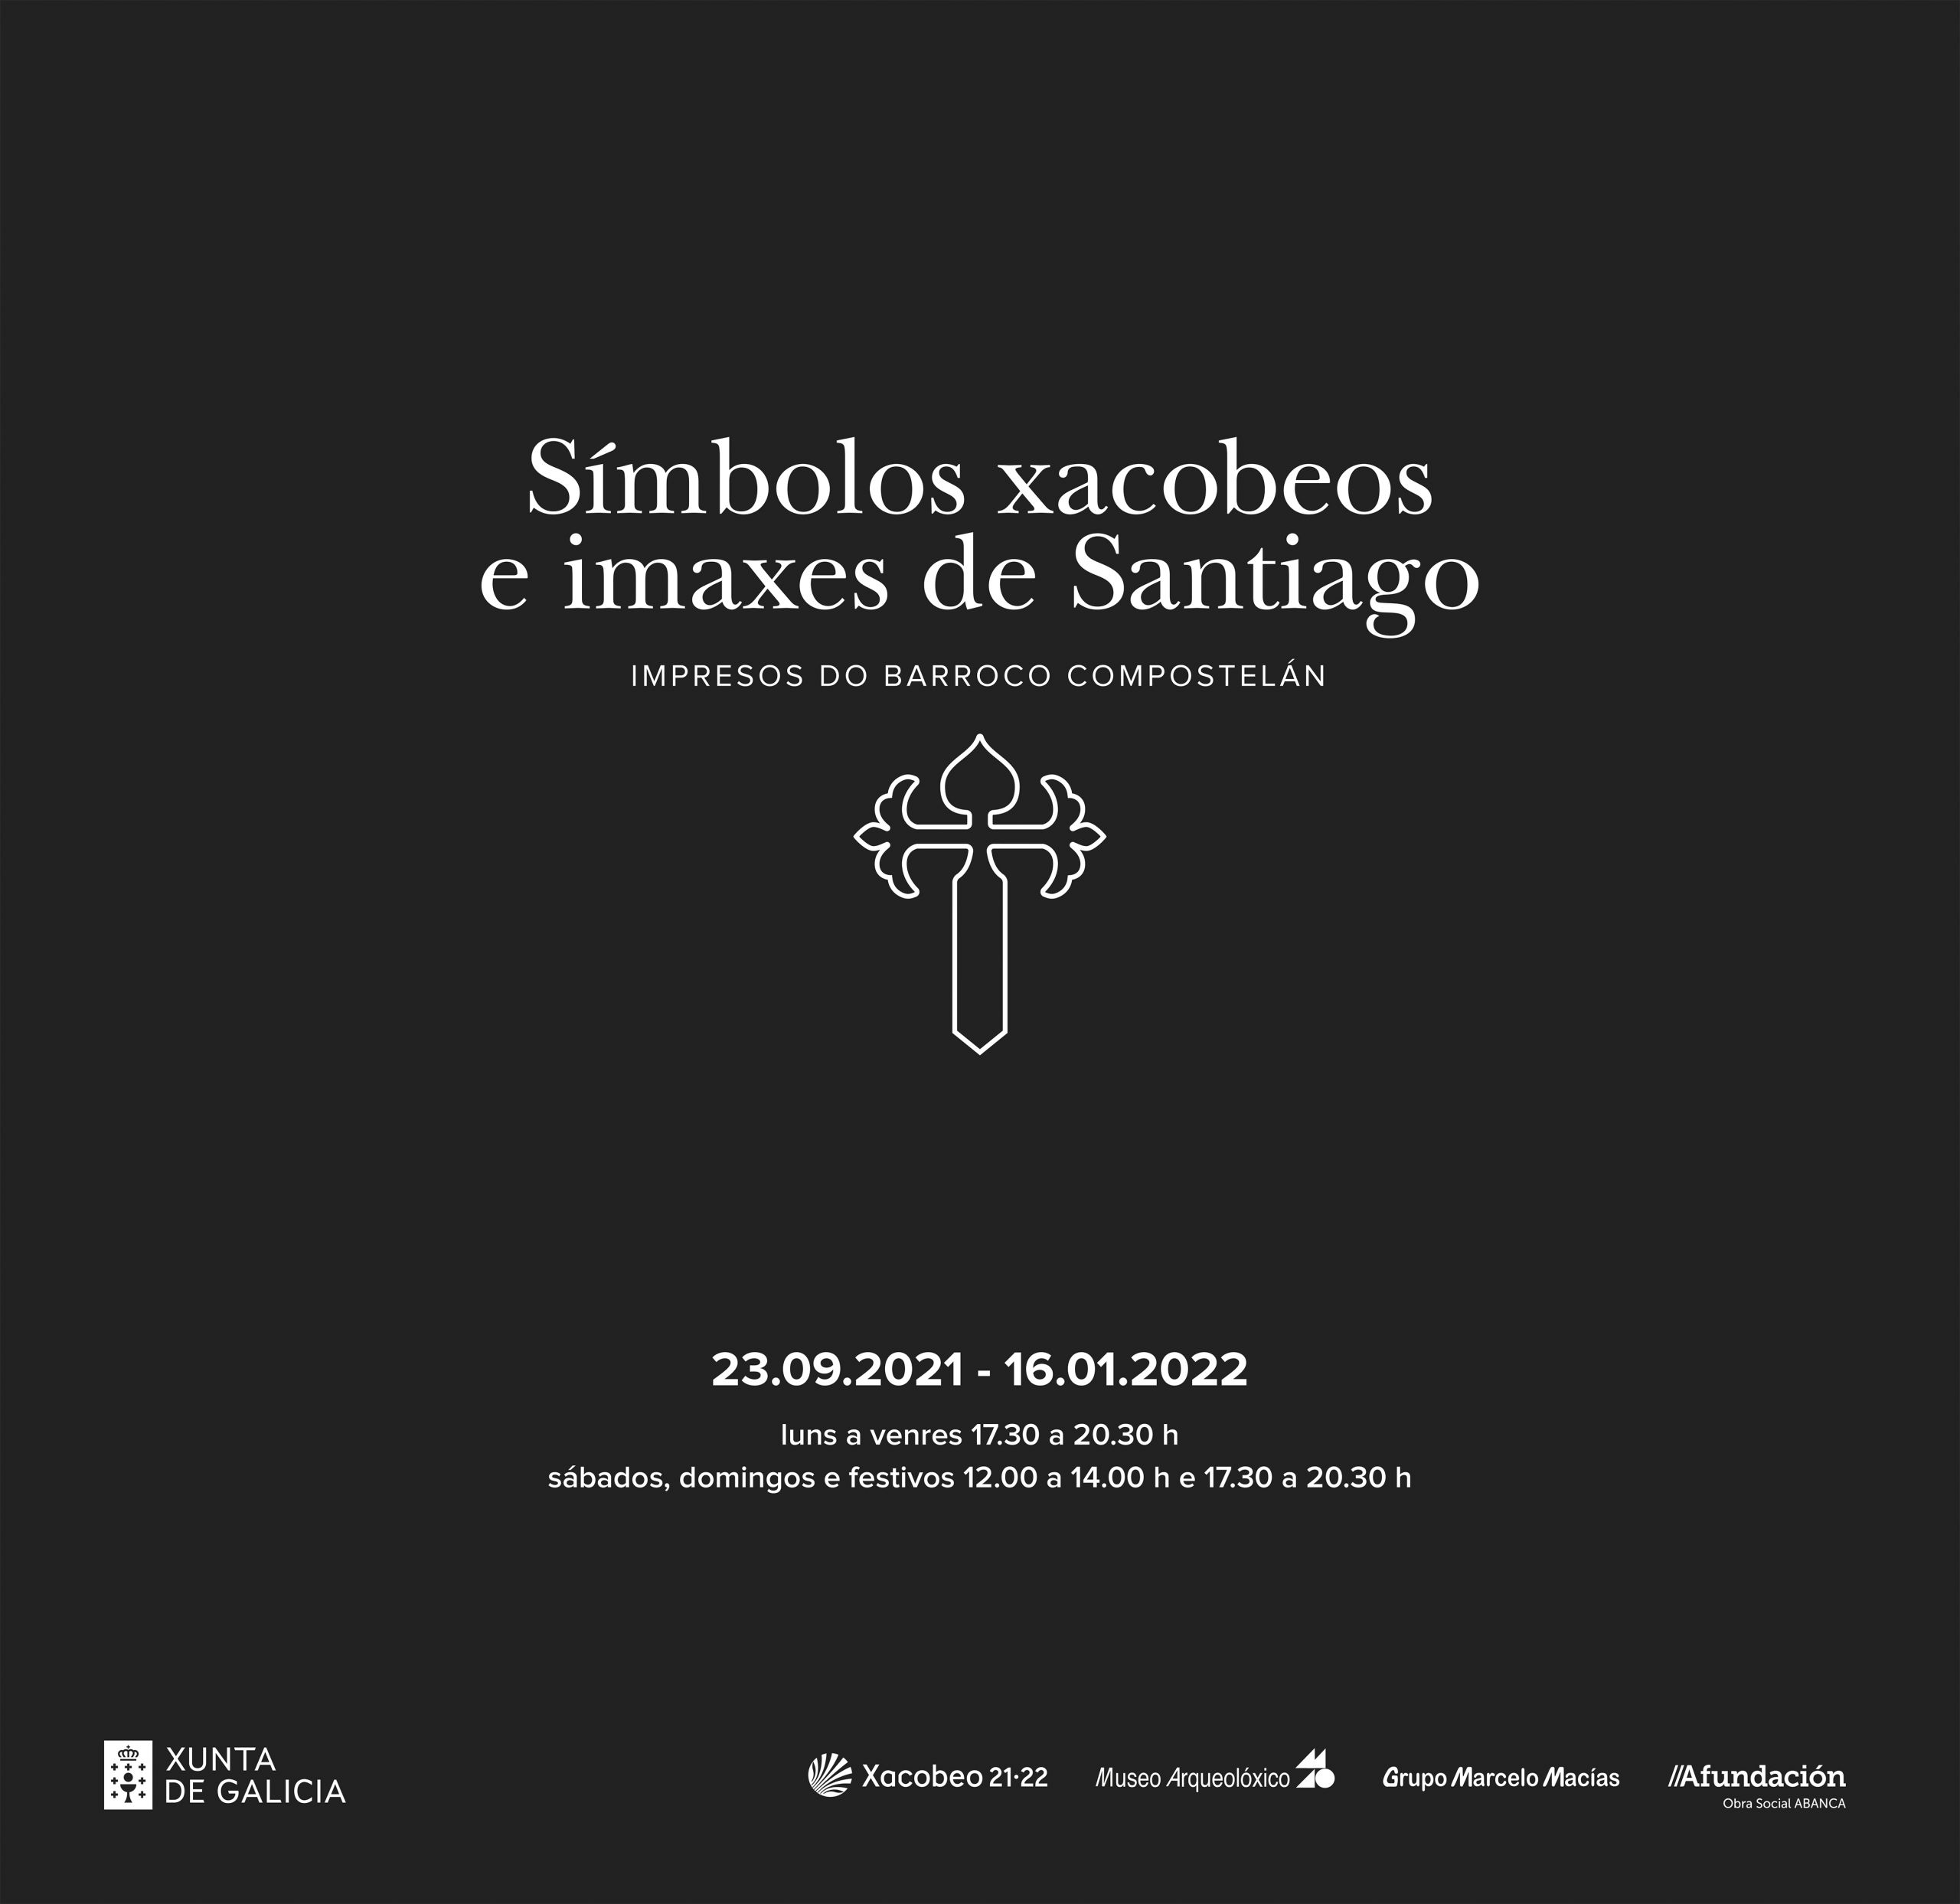 Símbolos xacobeos e imaxes de Santiago. Impresos do barroco compostelán en Ourense